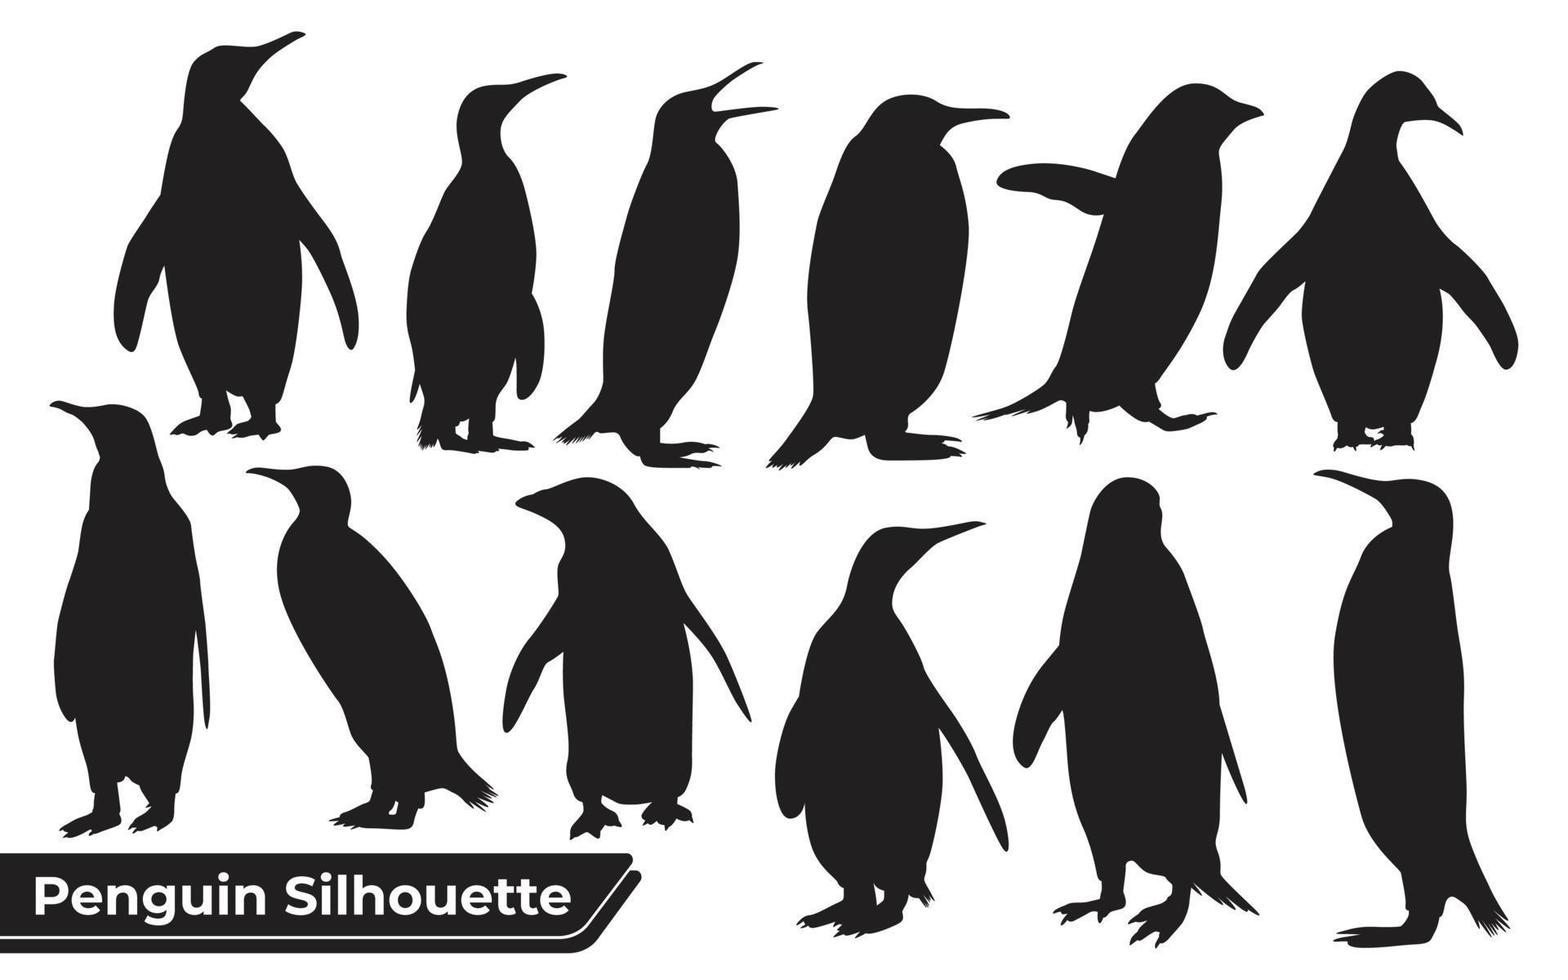 colección de silueta de pingüino en diferentes poses vector